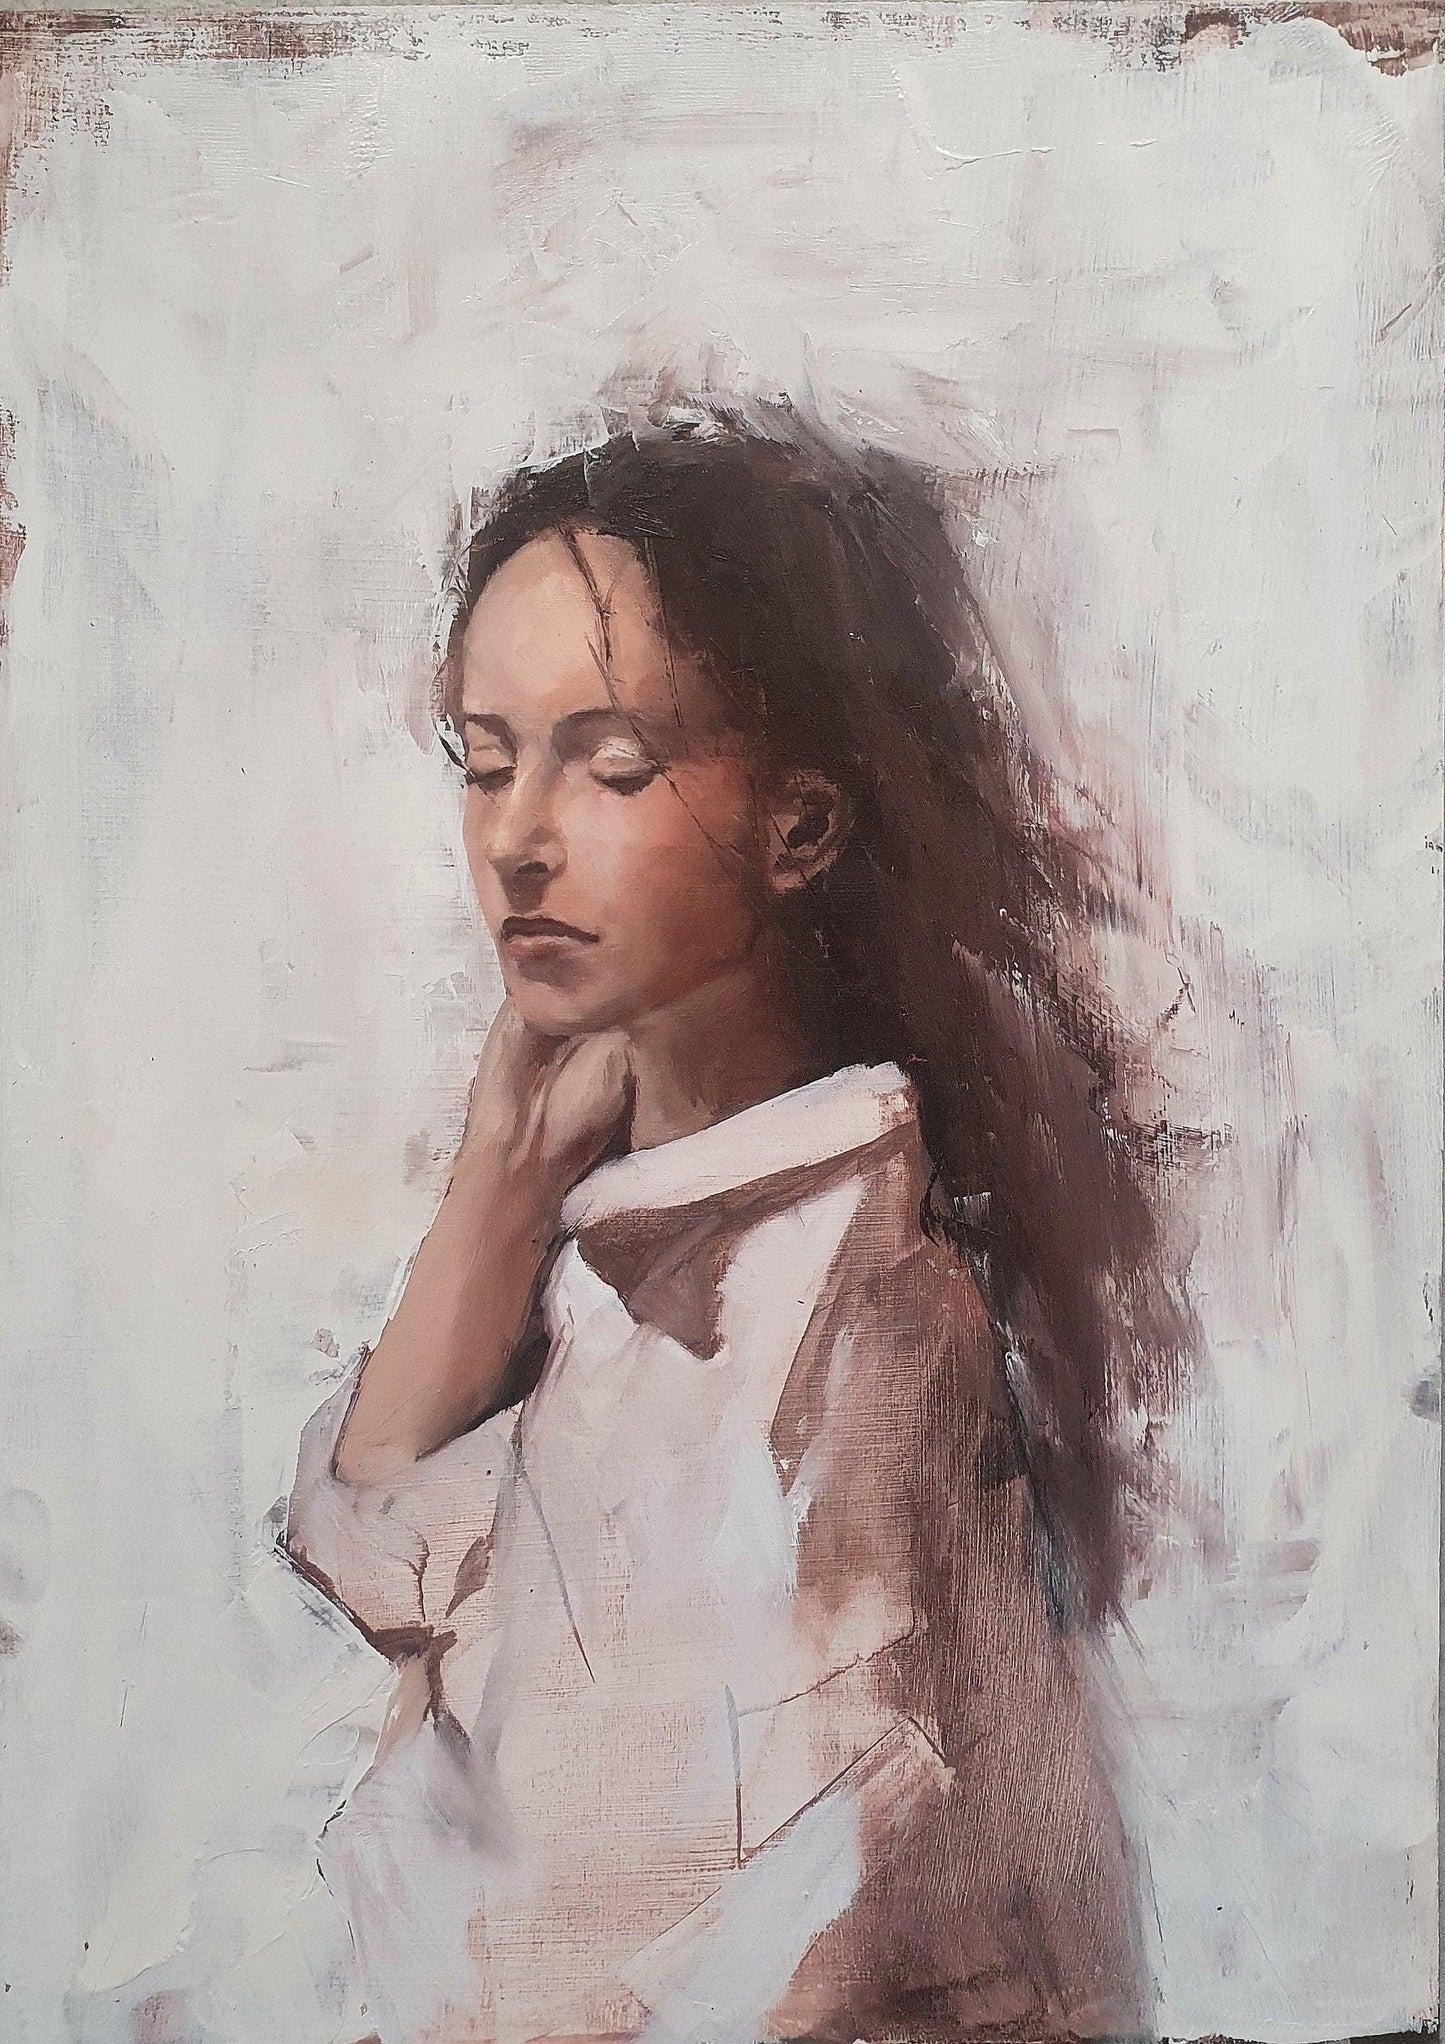 Portrait 5/100 #100headschallange - Kirsi Hallberg Art